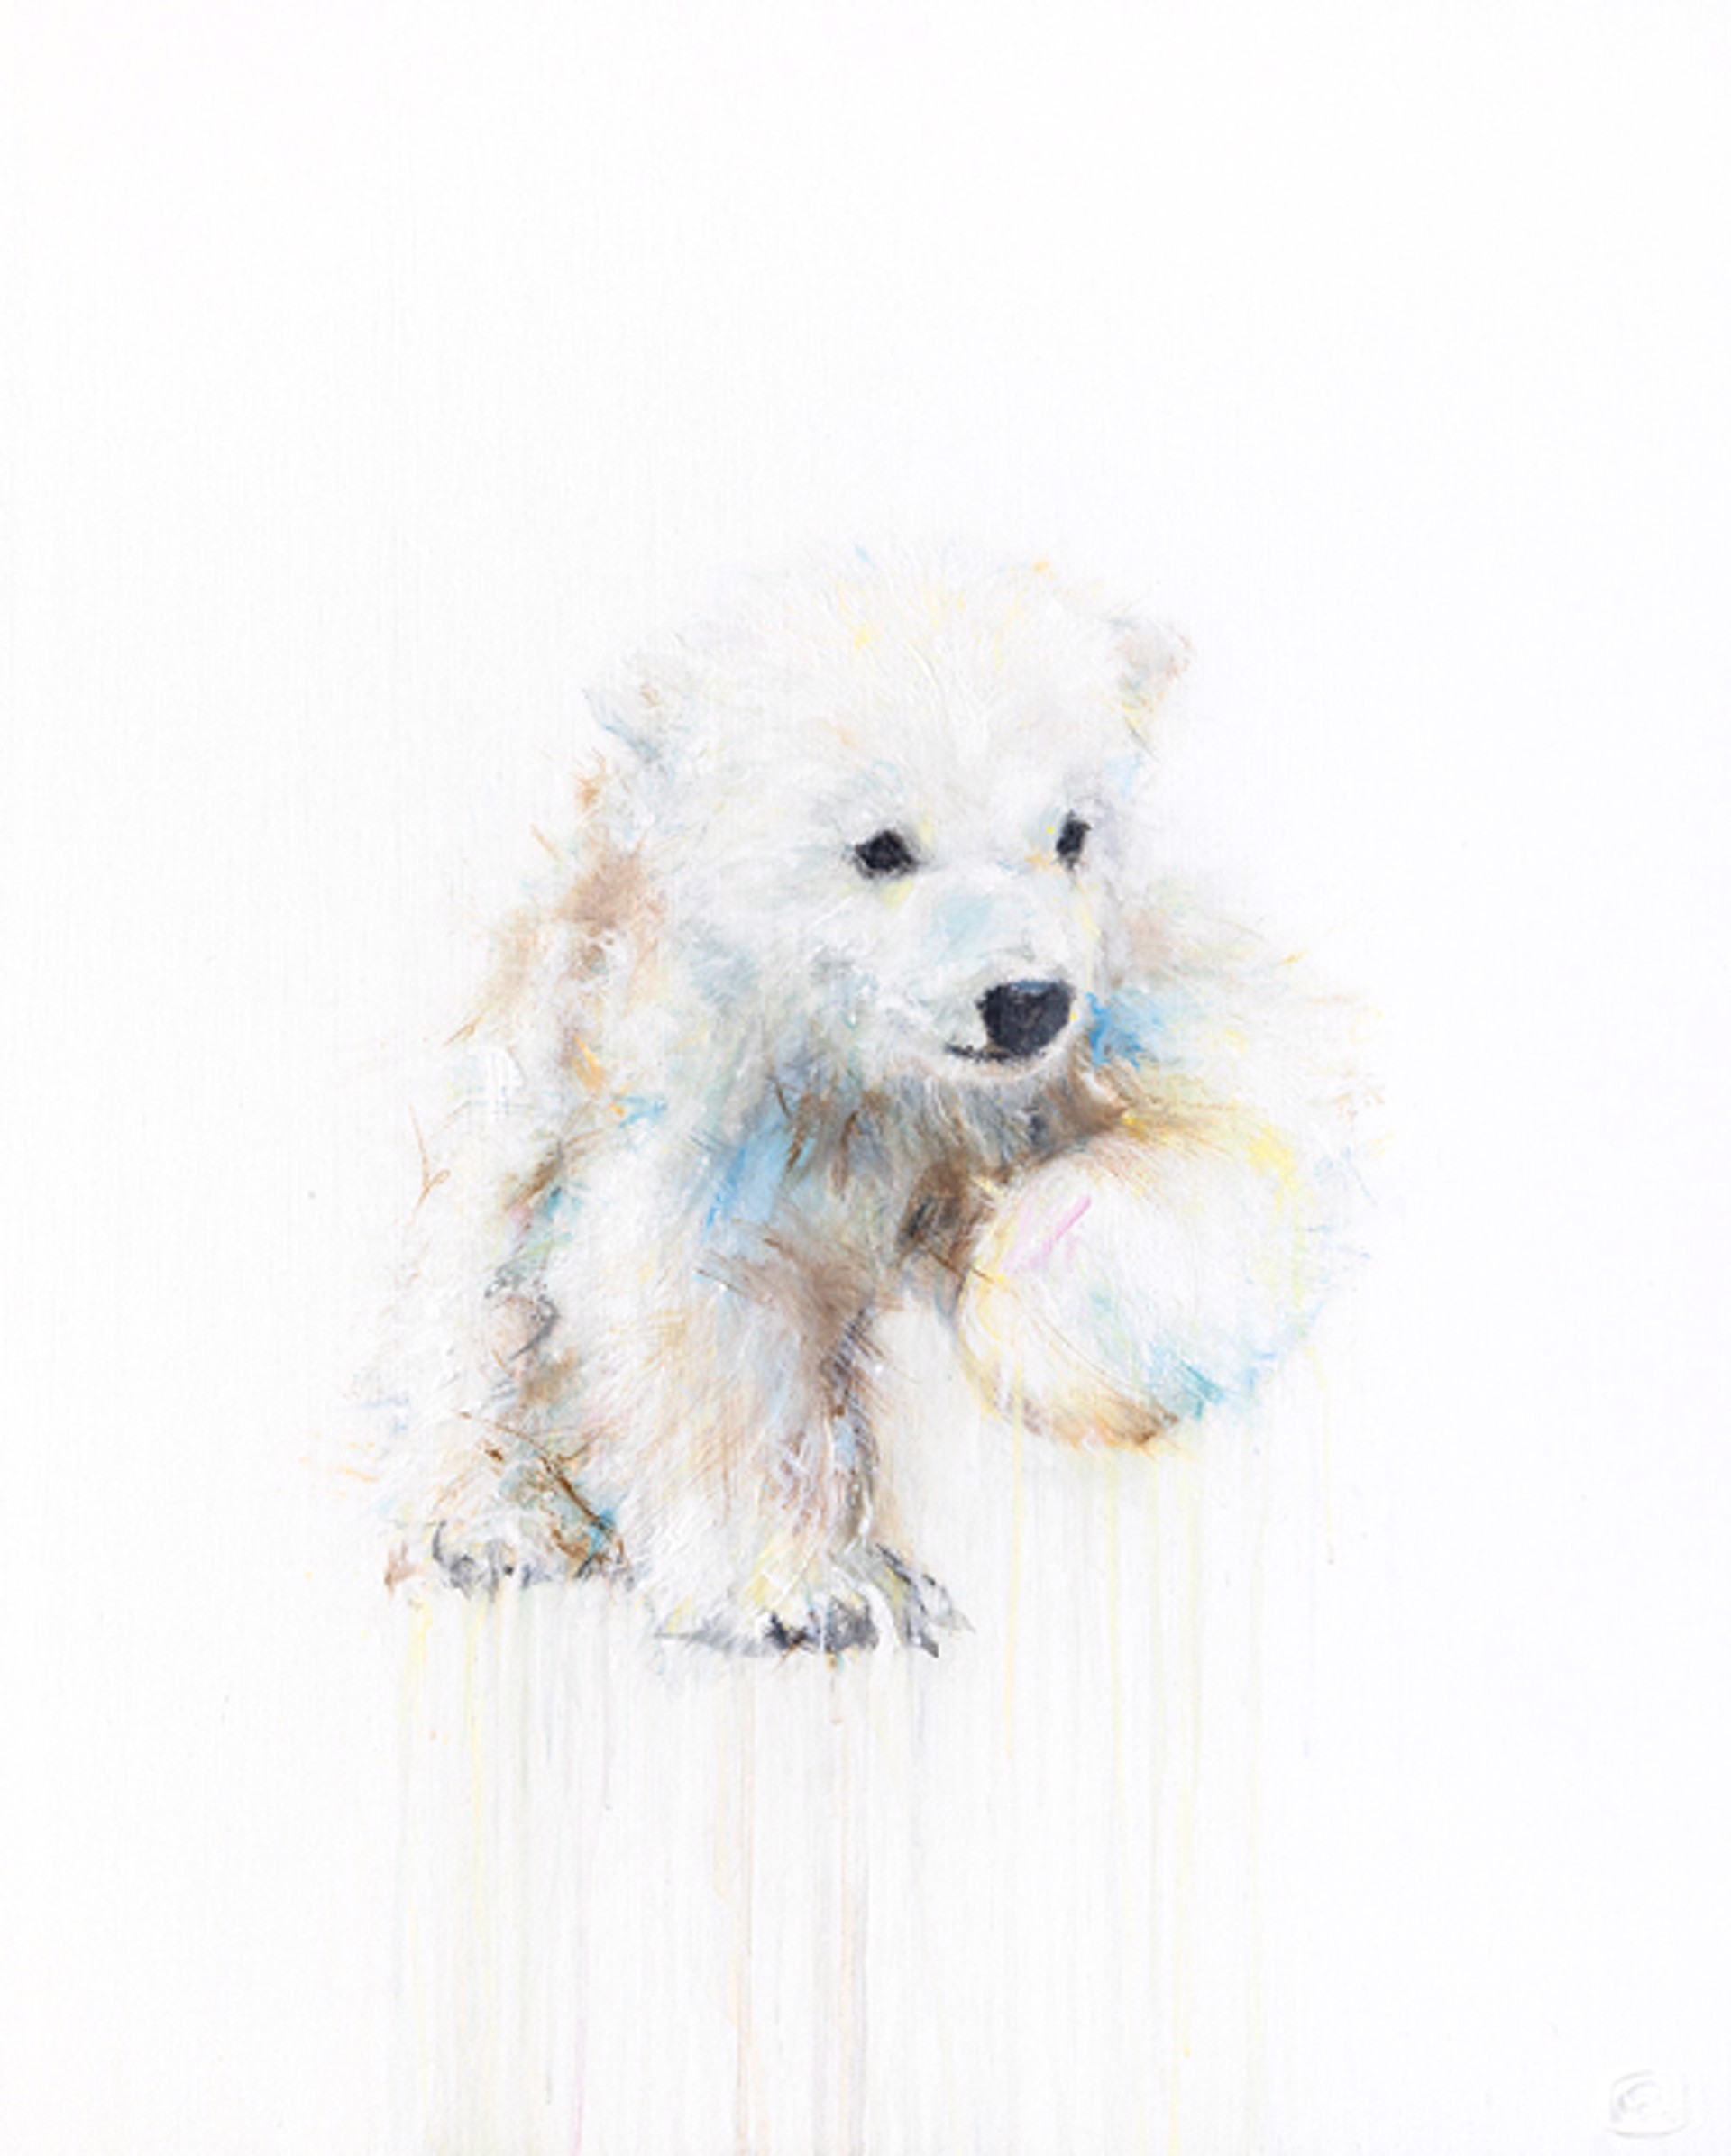 Polar Bear LXIV by Myriam Rousseau